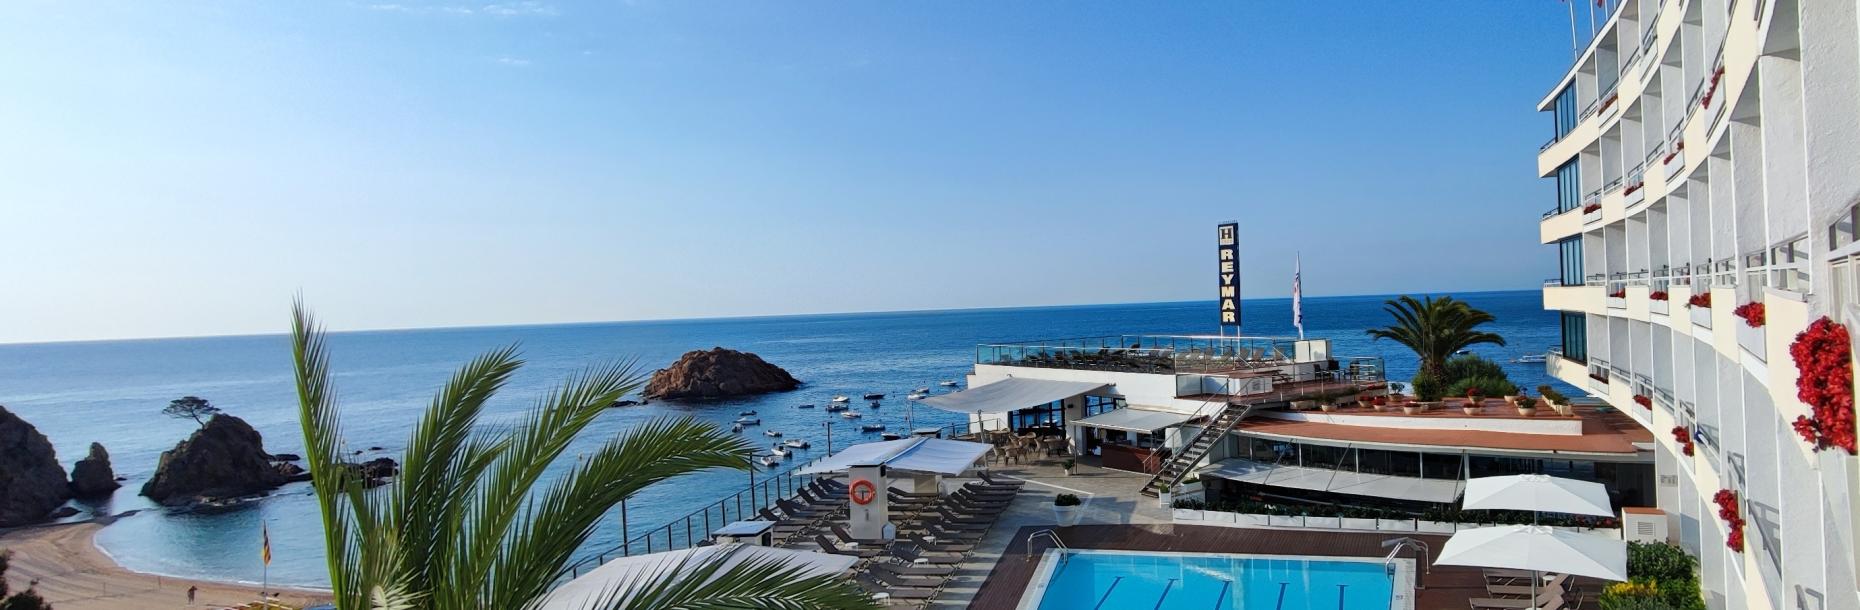 GRAN HOTEL REYMAR ****s: Tu hotel con encanto en Tossa de Mar, Costa Brava